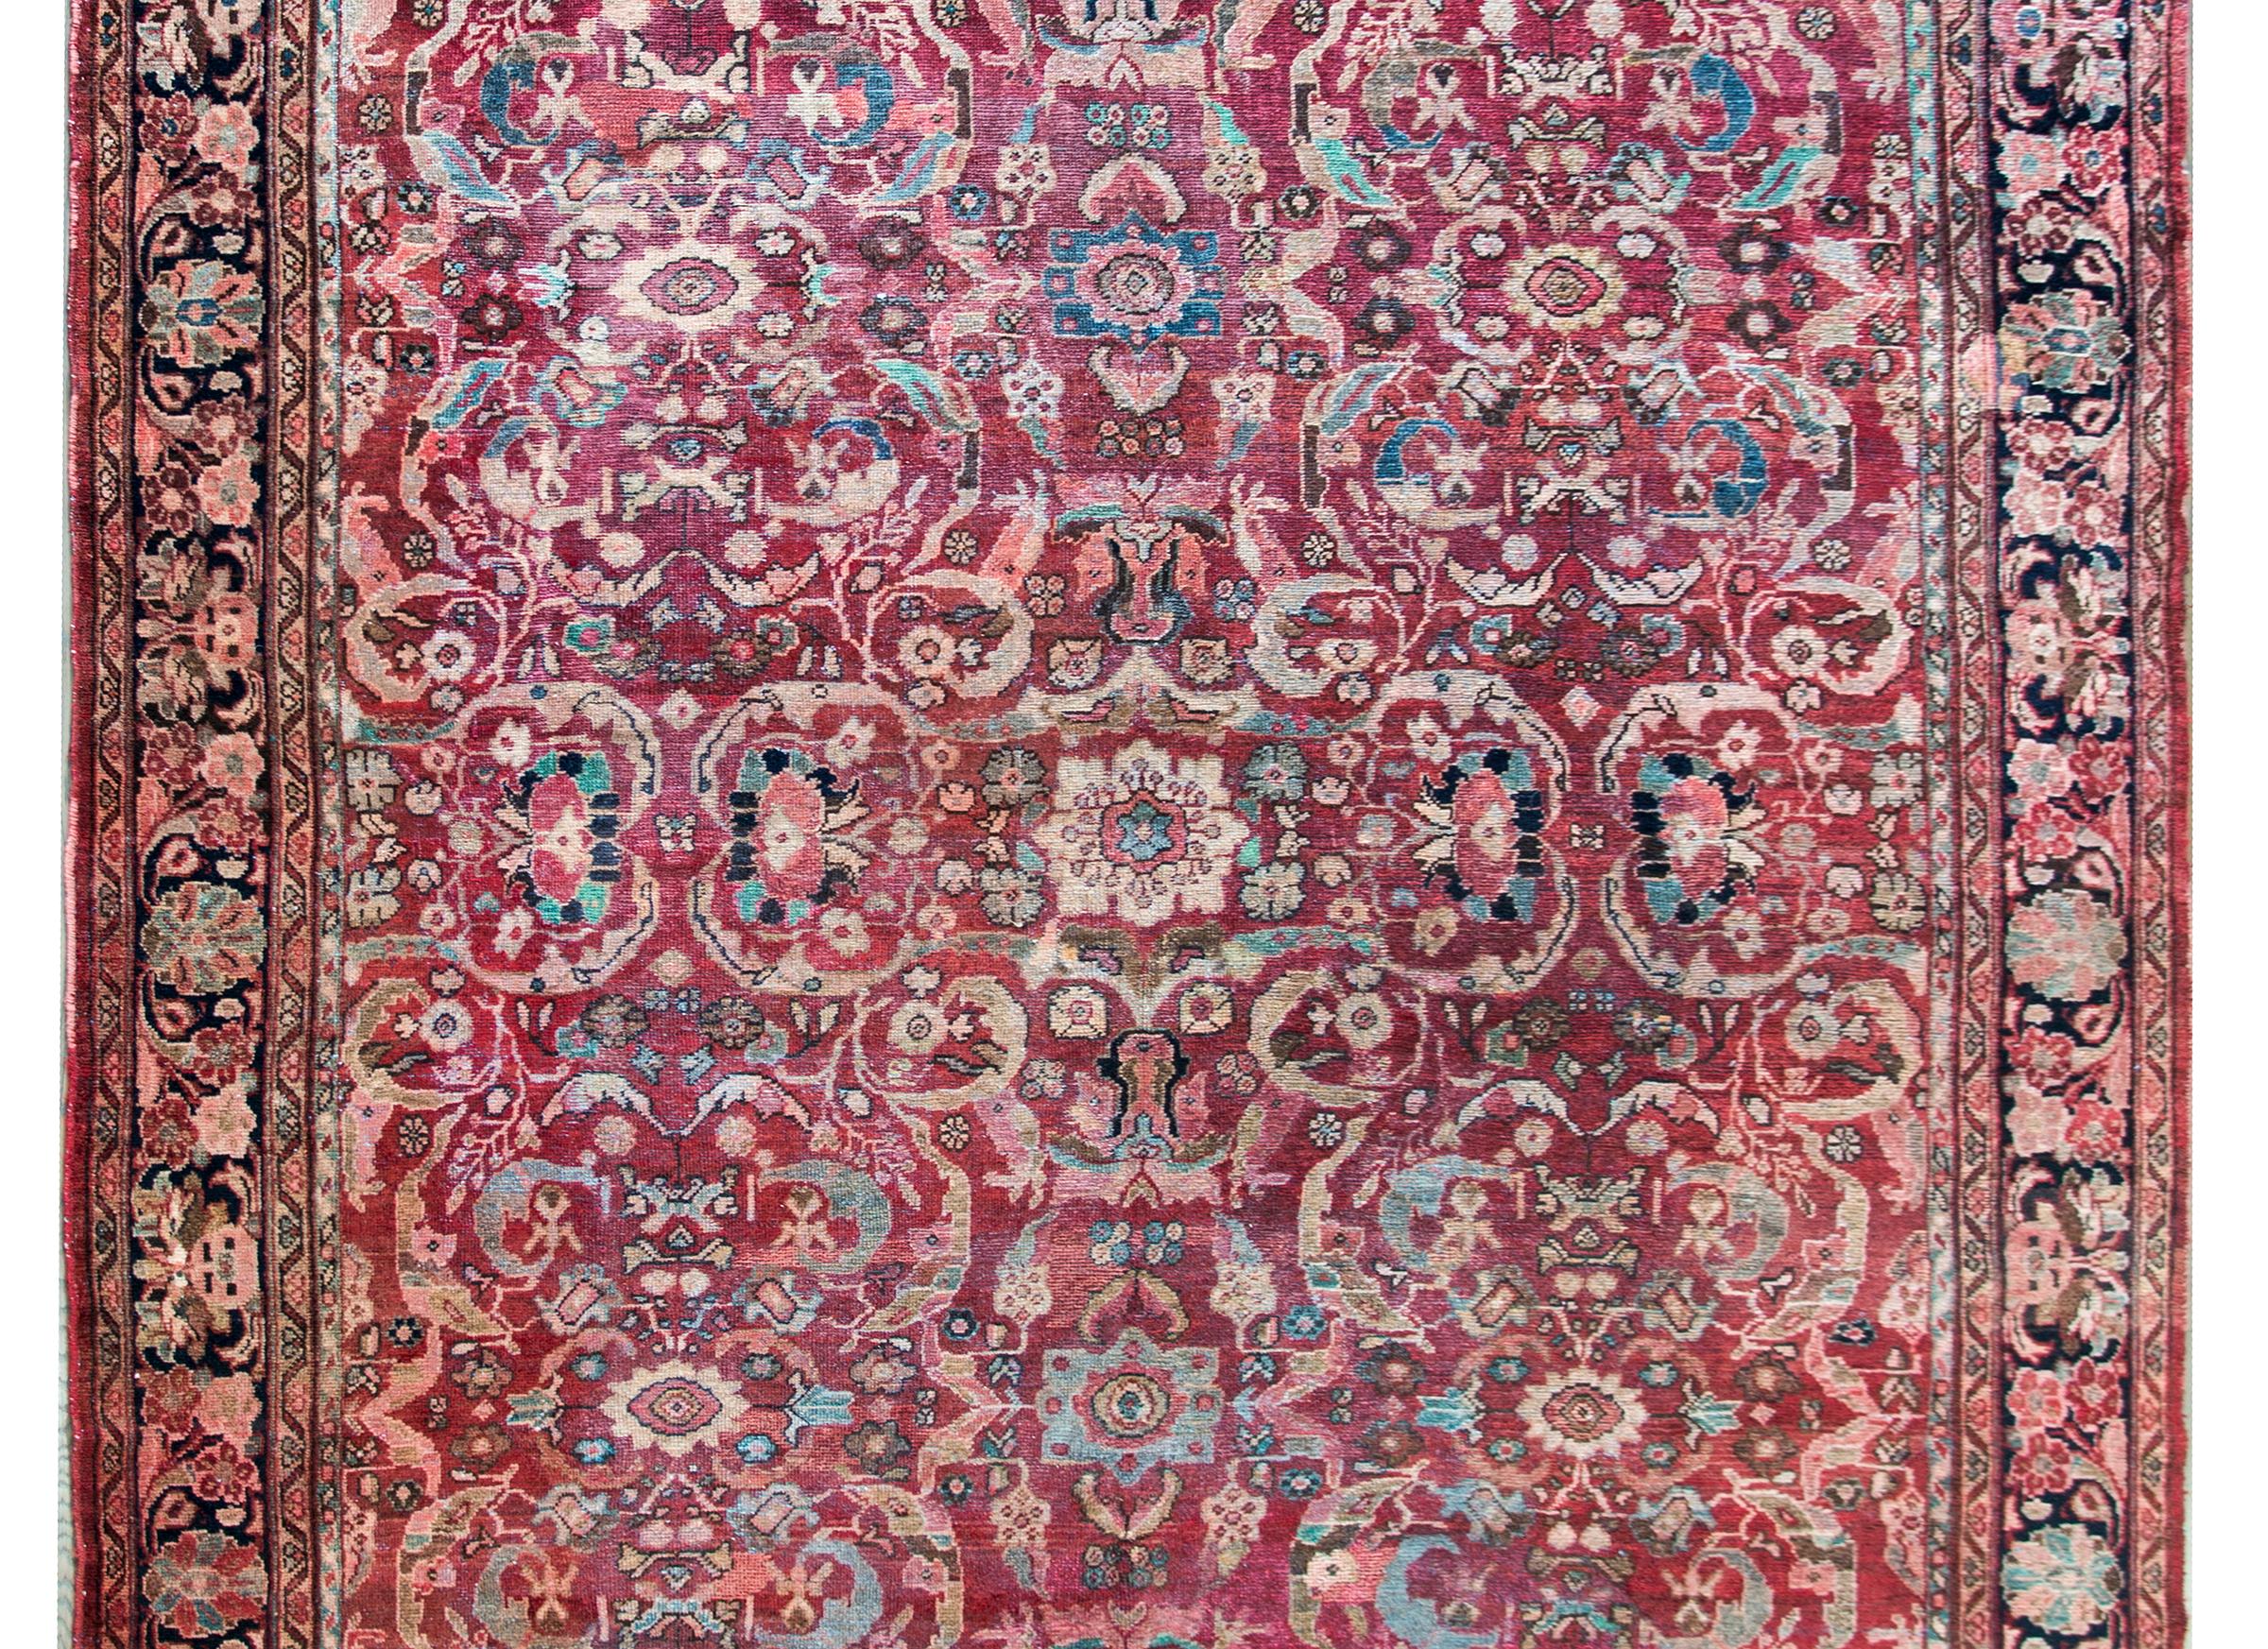 Ein prächtiger persischer Mahal-Teppich aus dem frühen 20. Jahrhundert mit einem unglaublichen, gespiegelten Blumenmuster in Creme, Braun, Rosa und Indigo auf einem cranberryfarbenen Hintergrund, umrahmt von einer komplexen Bordüre mit einem